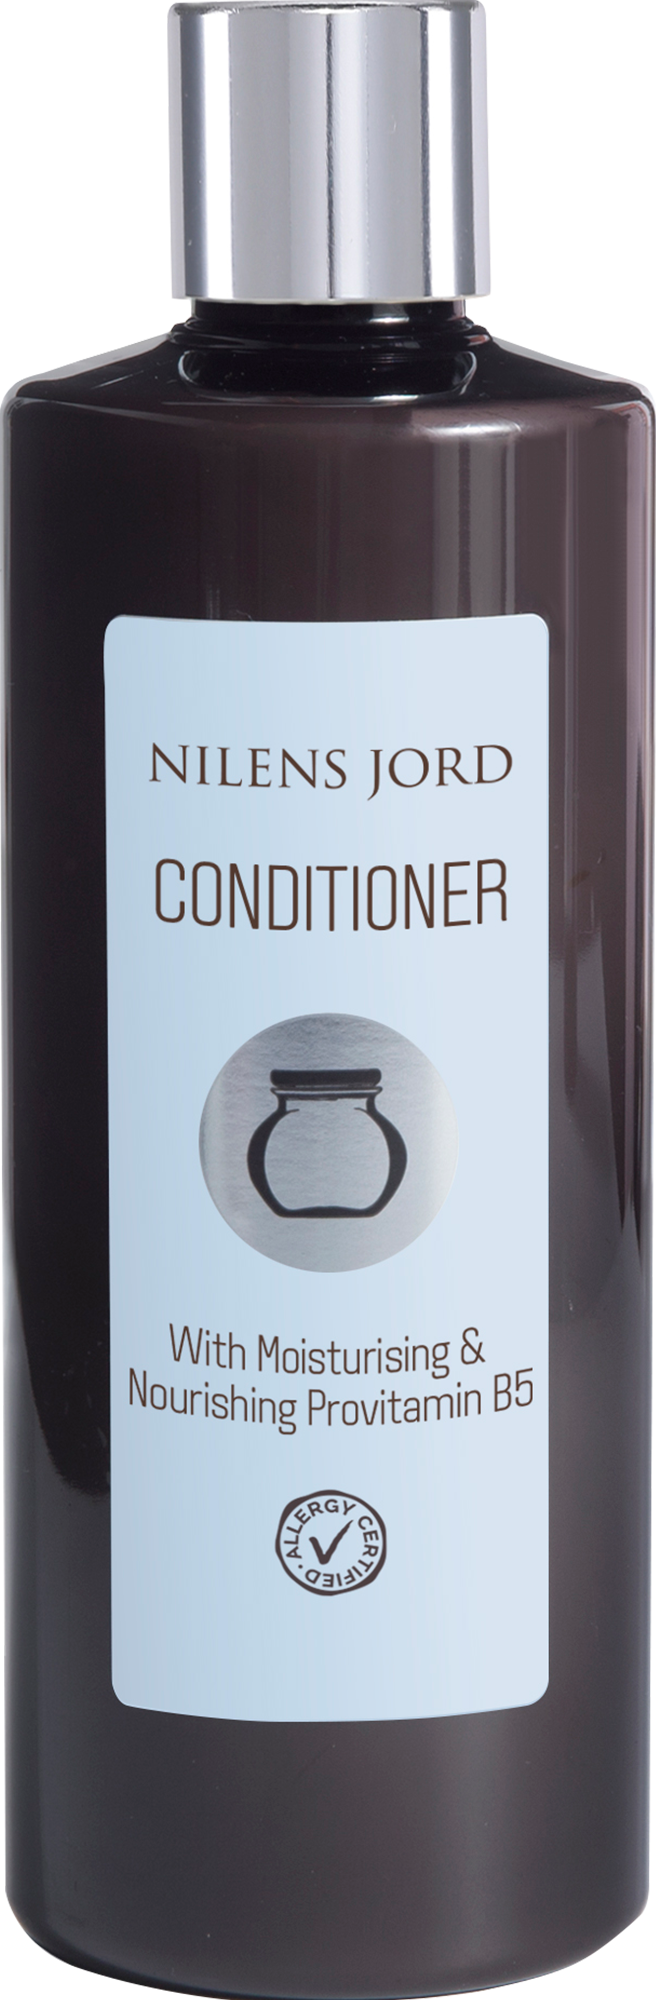 Billede af Nilens Jord Conditioner 300 ml. hos Well.dk